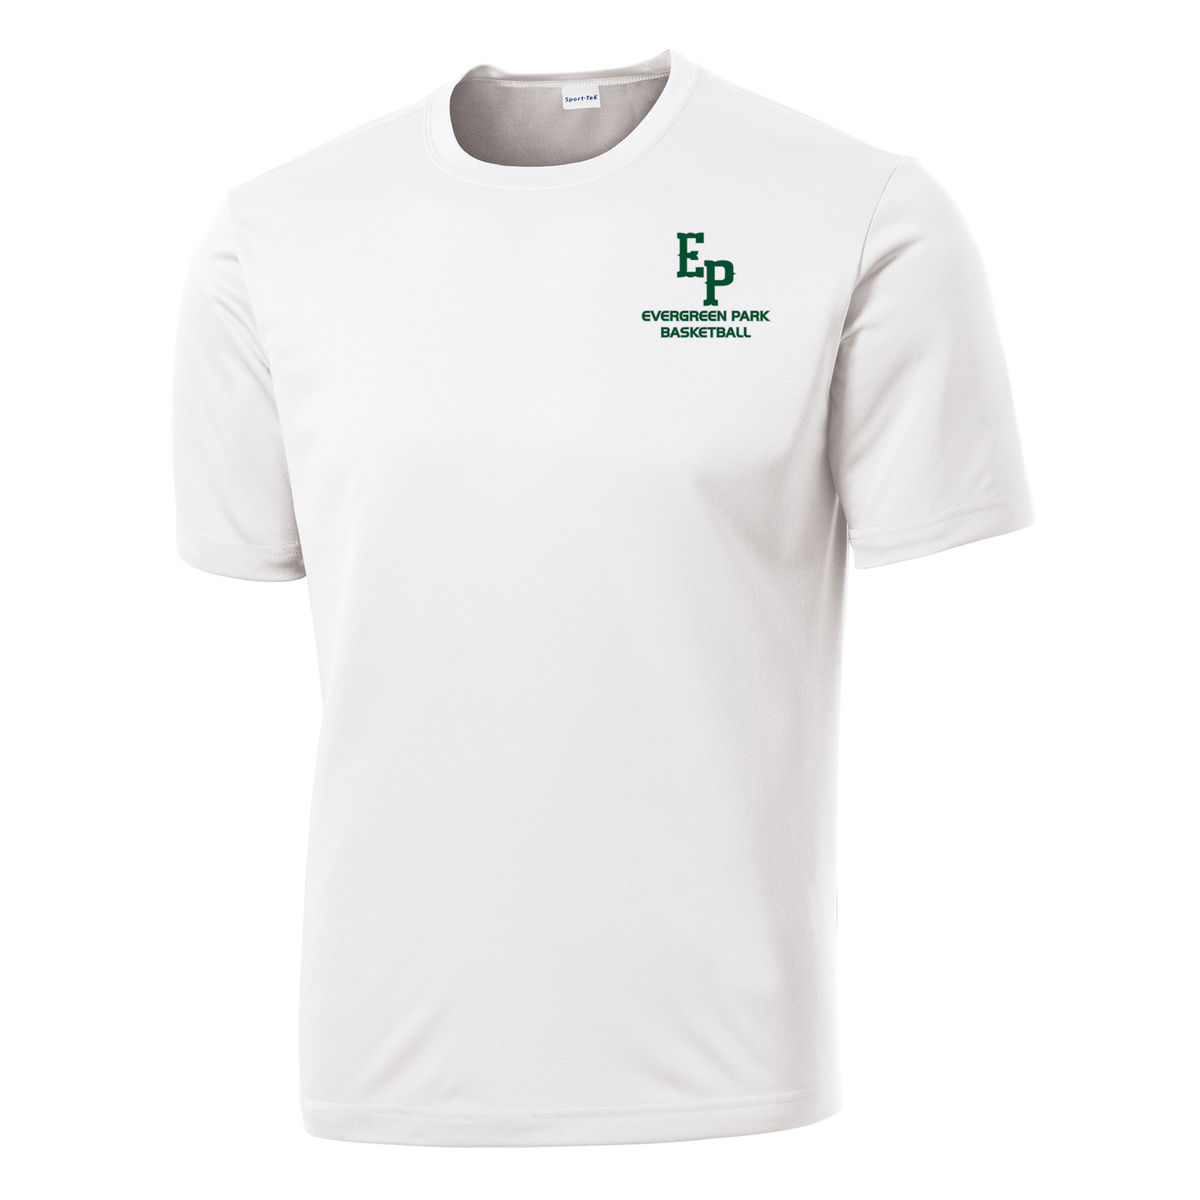 Evergreen Park Basketball Performance T-Shirt